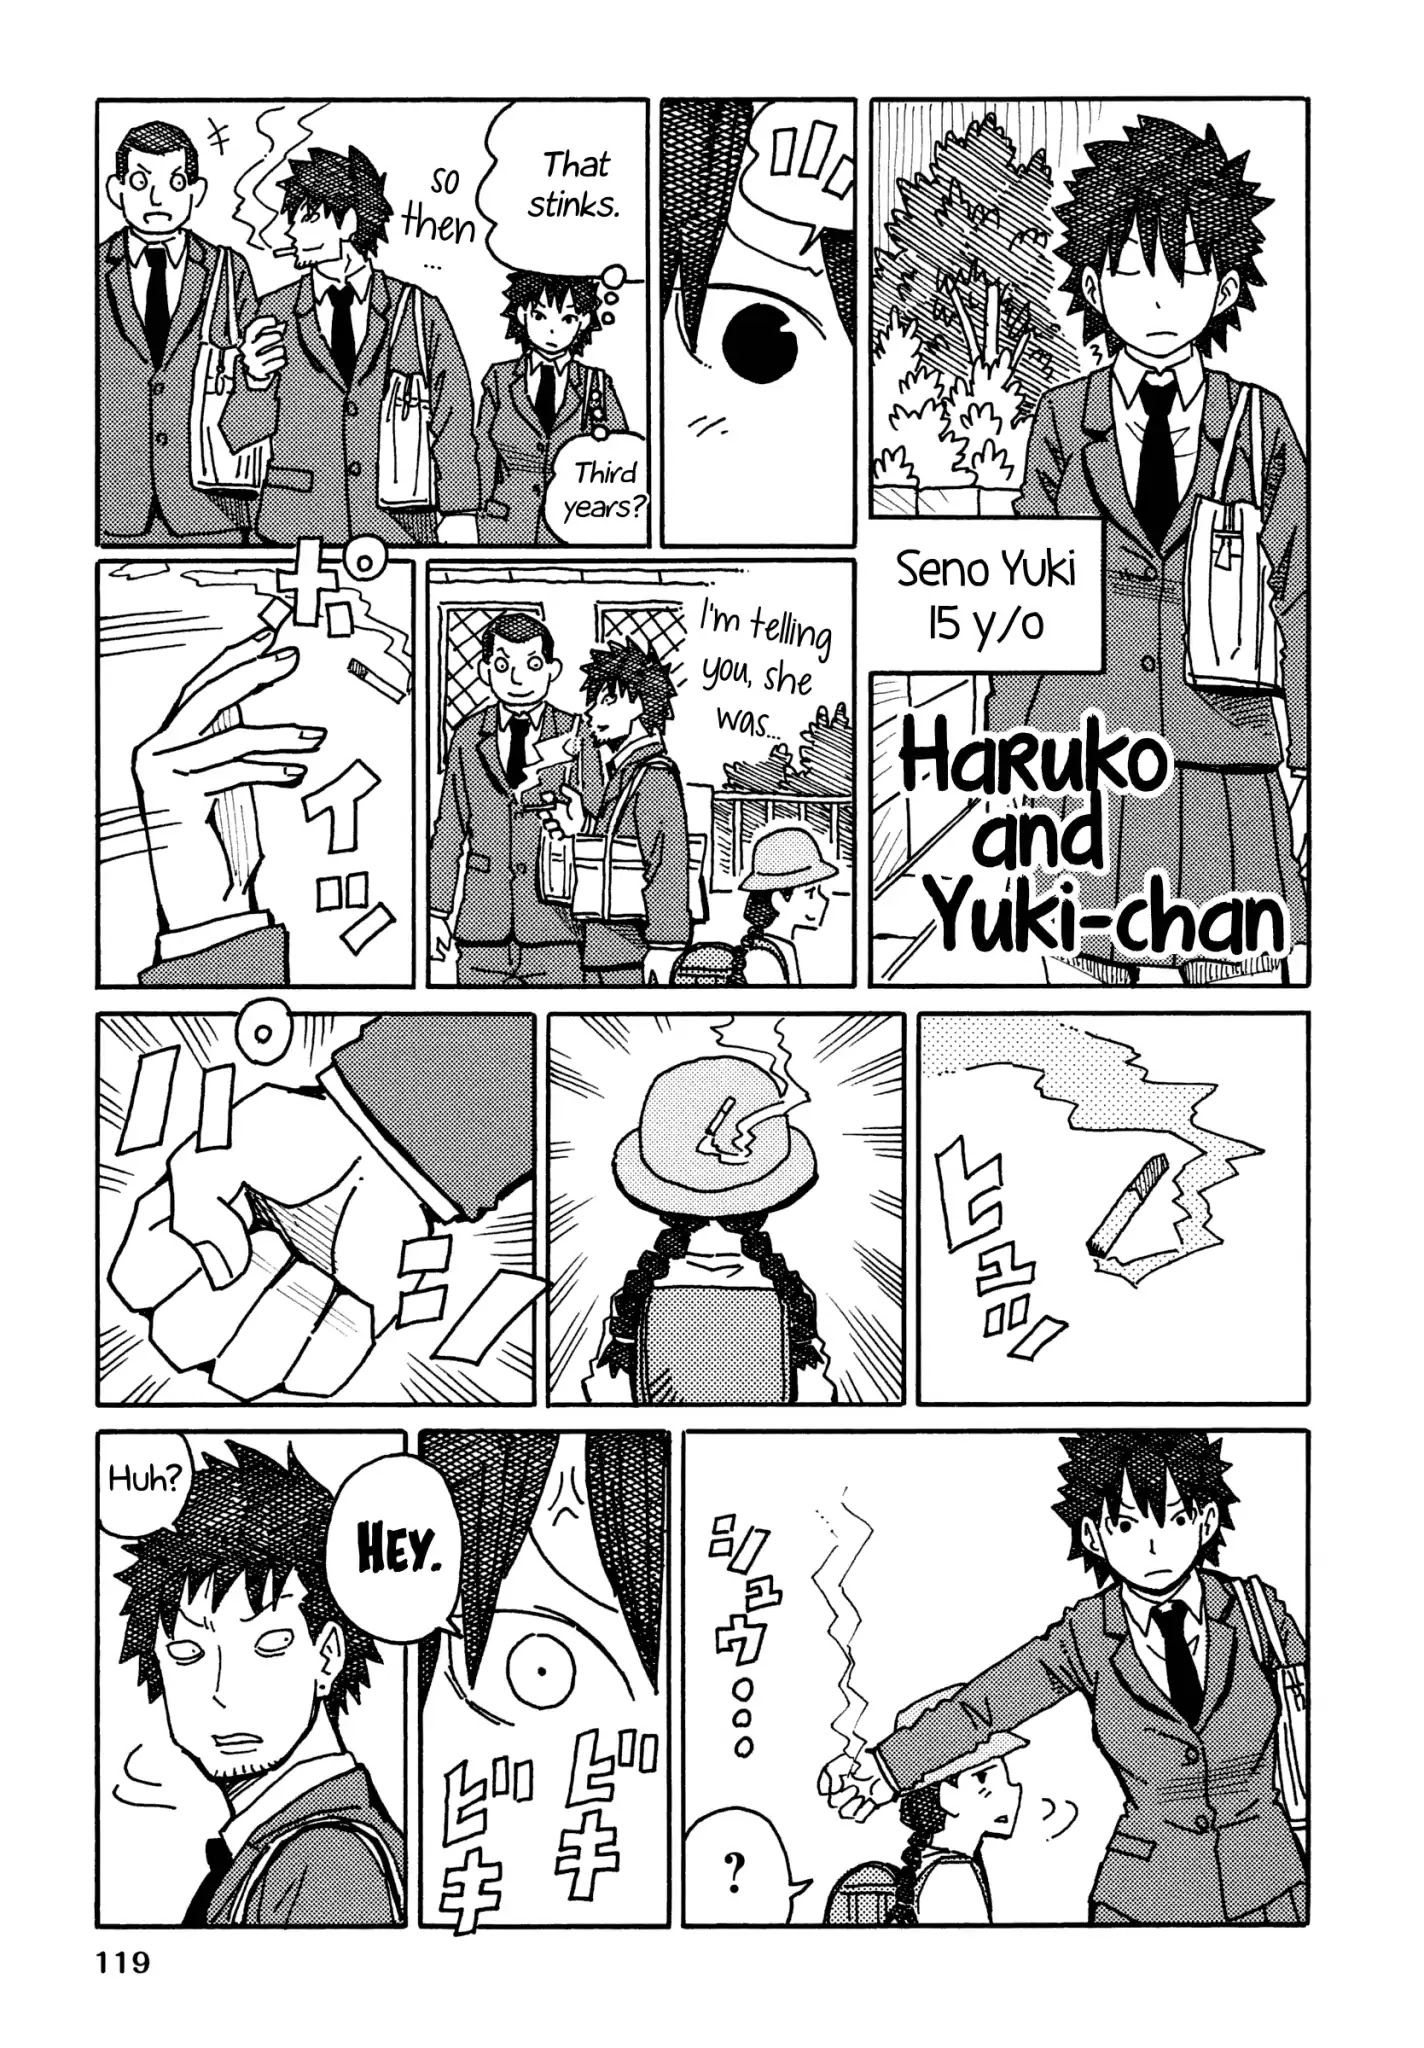 Hatarakanai Futari (The Jobless Siblings) Chapter 308.2: Haruko And Yuki-Chan